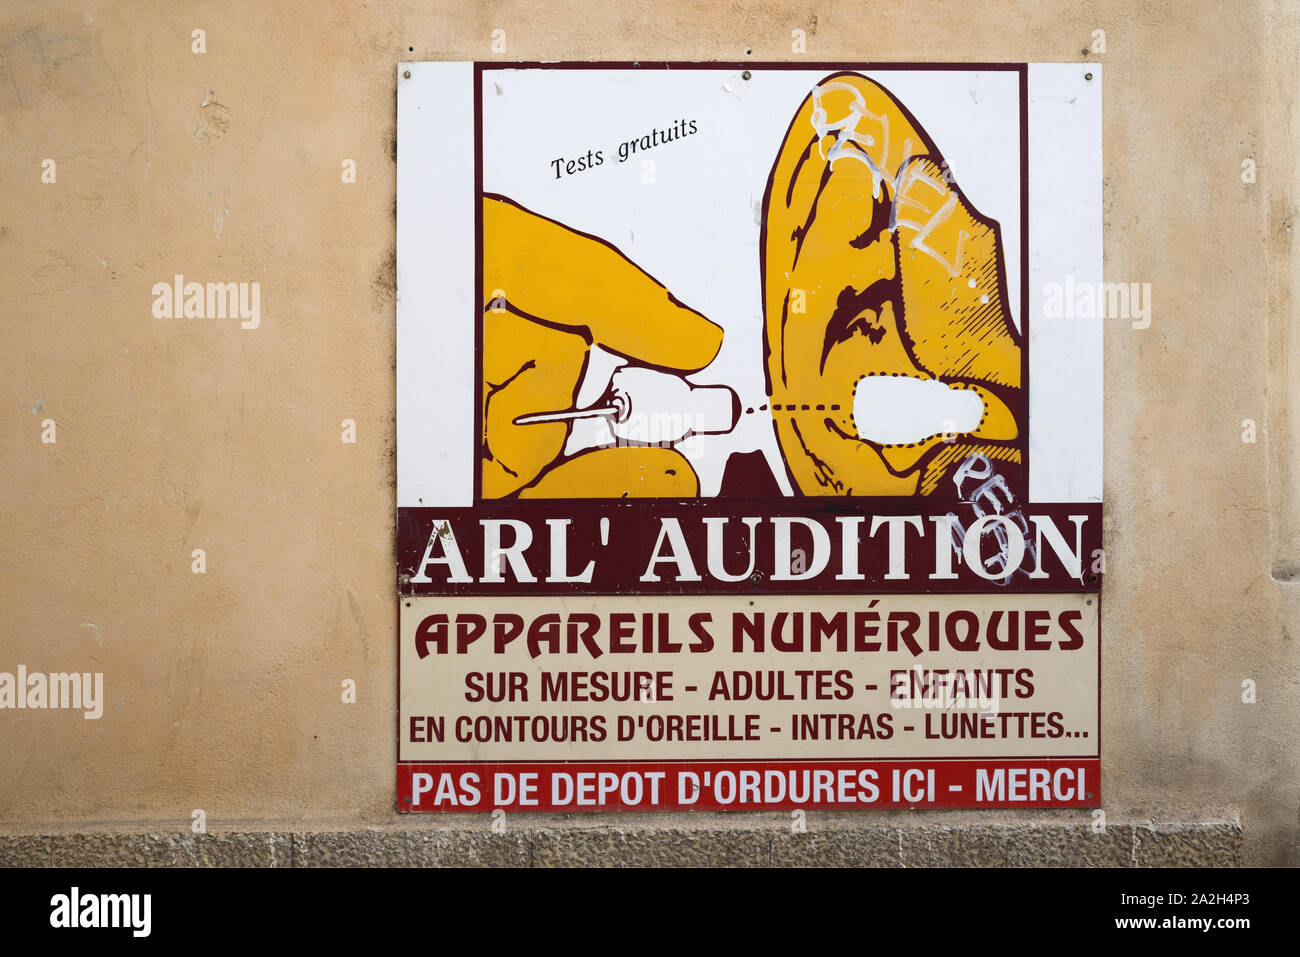 Peinture murale stylisée de l'aide auditive, publicité, annonce ou publicité Arles Provence France Banque D'Images